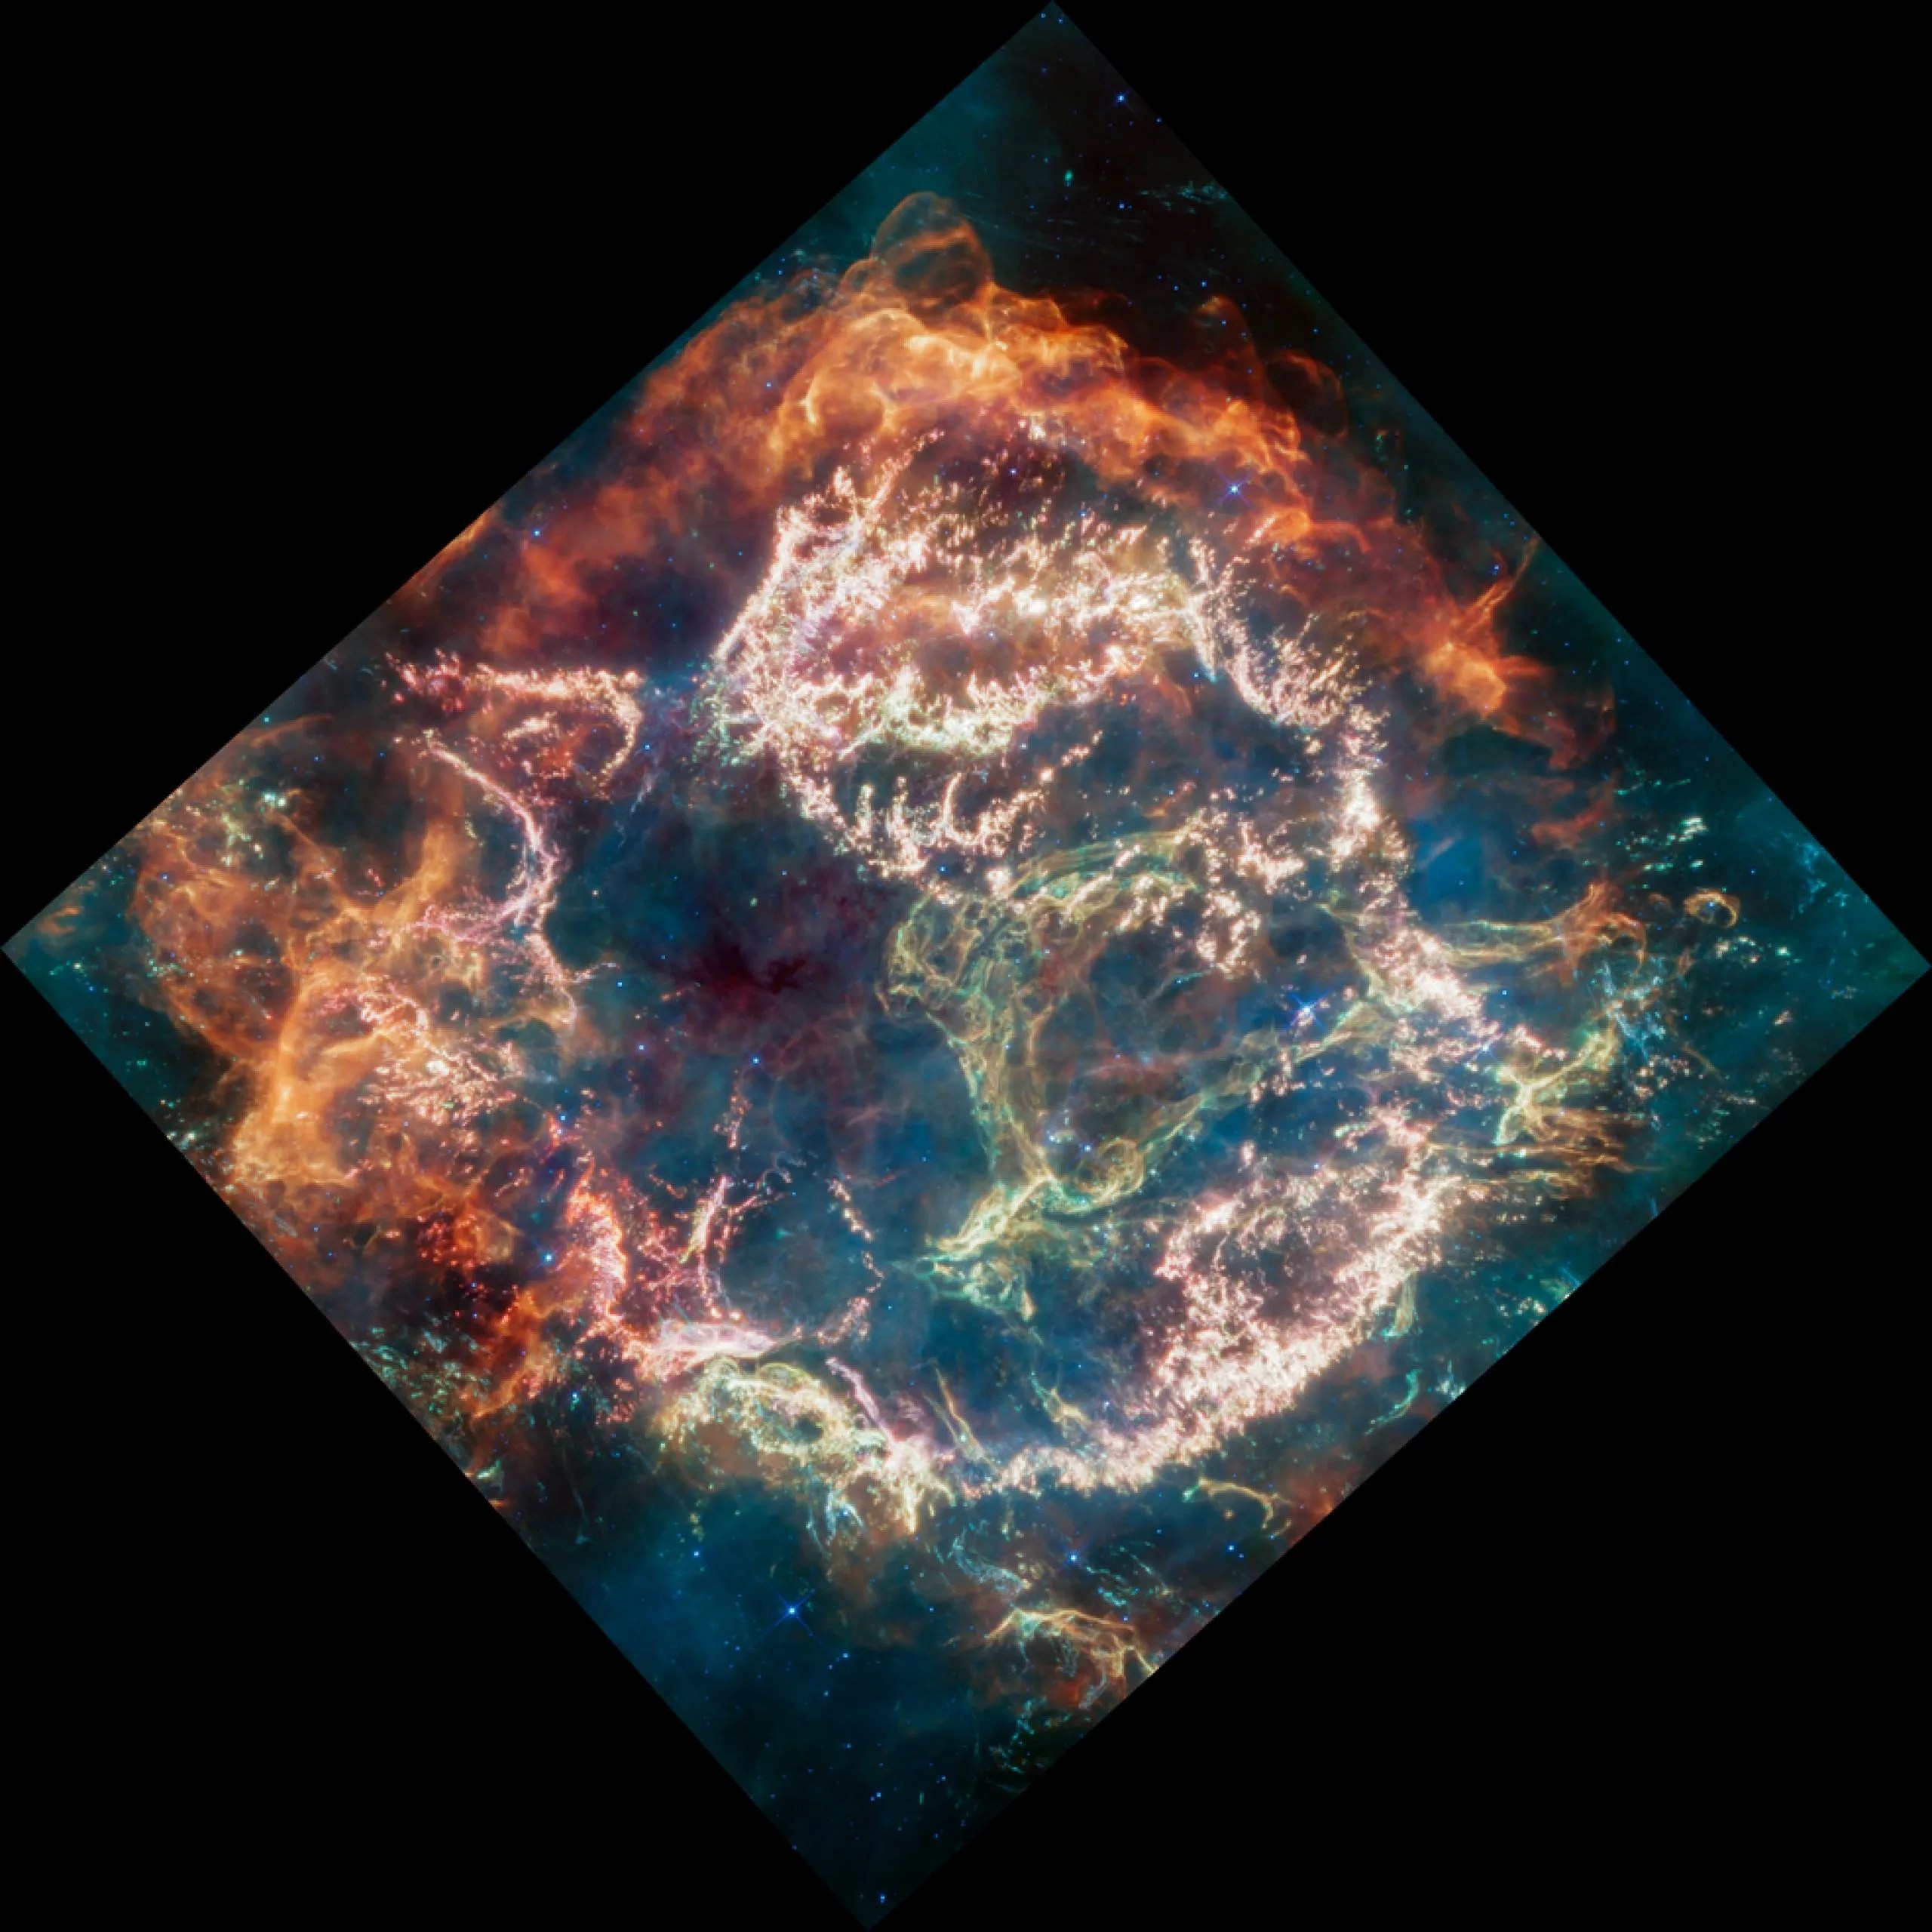 Casiopea A (Cas A) es el remanente de una supernova que está situado a unos 11.000 años luz de la Tierra en la constelación de Casiopea. Abarca unos 10 años luz. Esta nueva imagen utiliza datos del instrumento de infrarrojo medio (MIRI) de Webb para revelar a Cas A bajo una nueva luz.